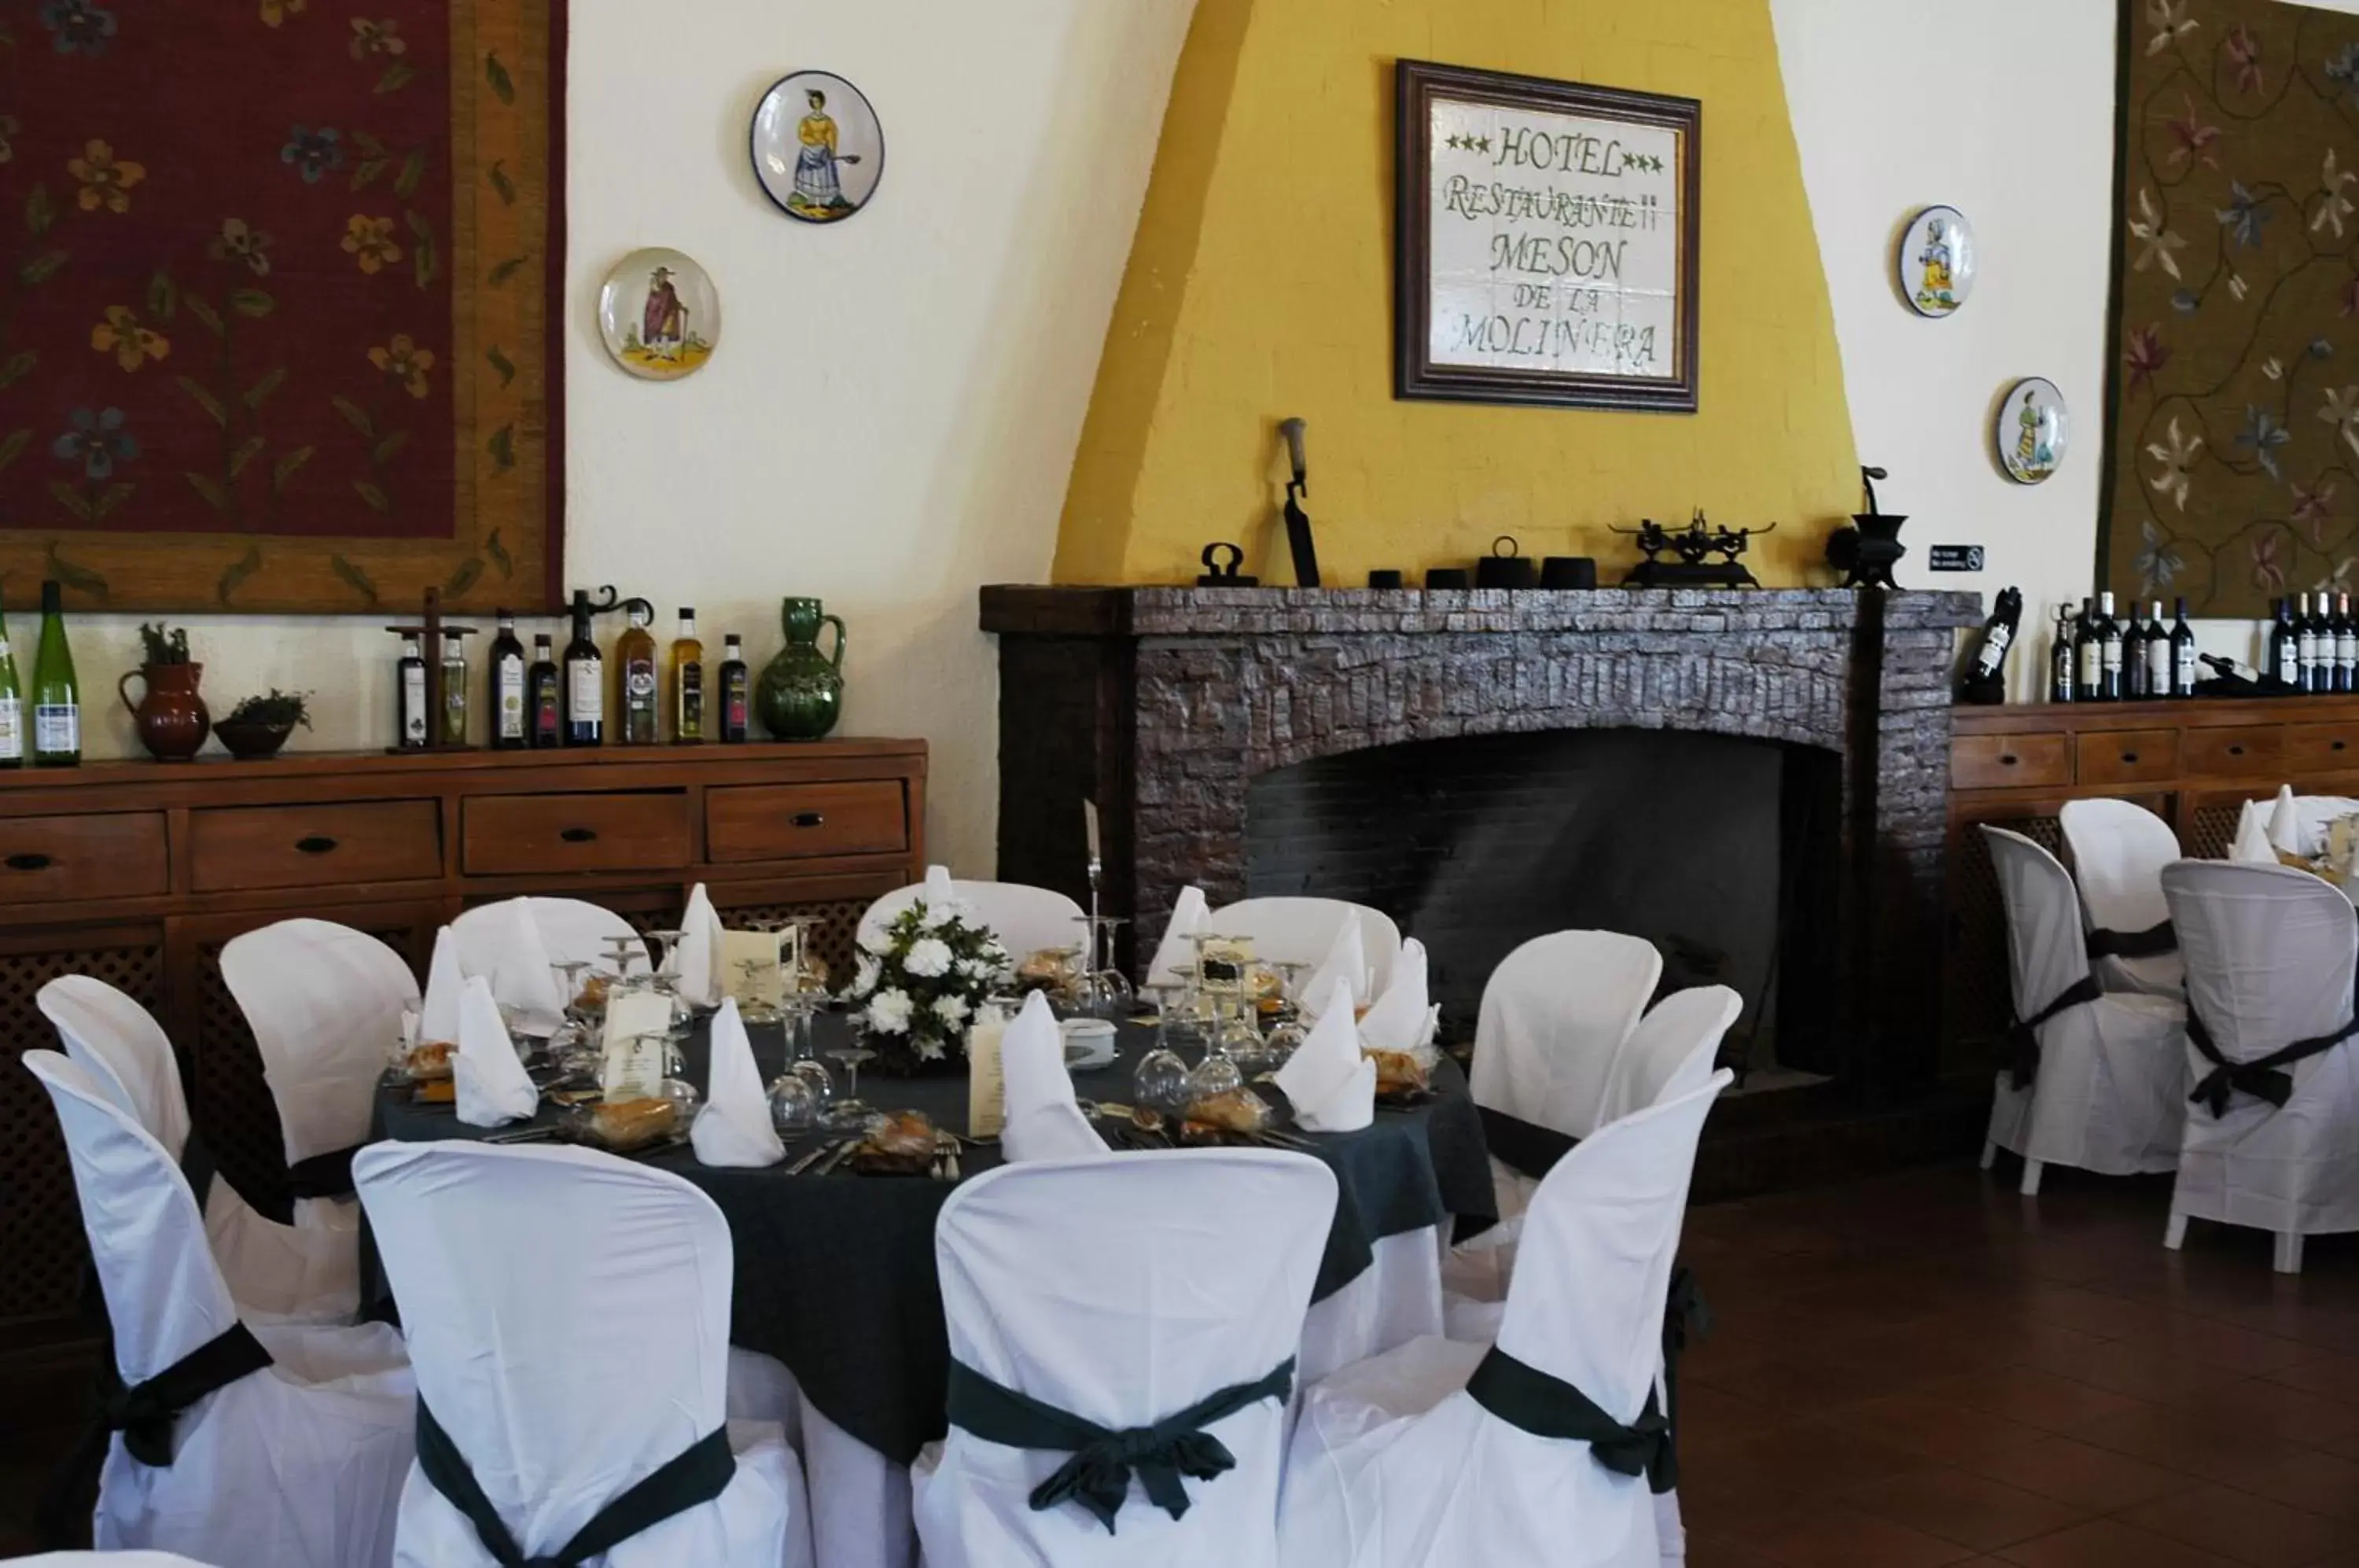 Banquet/Function facilities, Banquet Facilities in Mesón de la Molinera